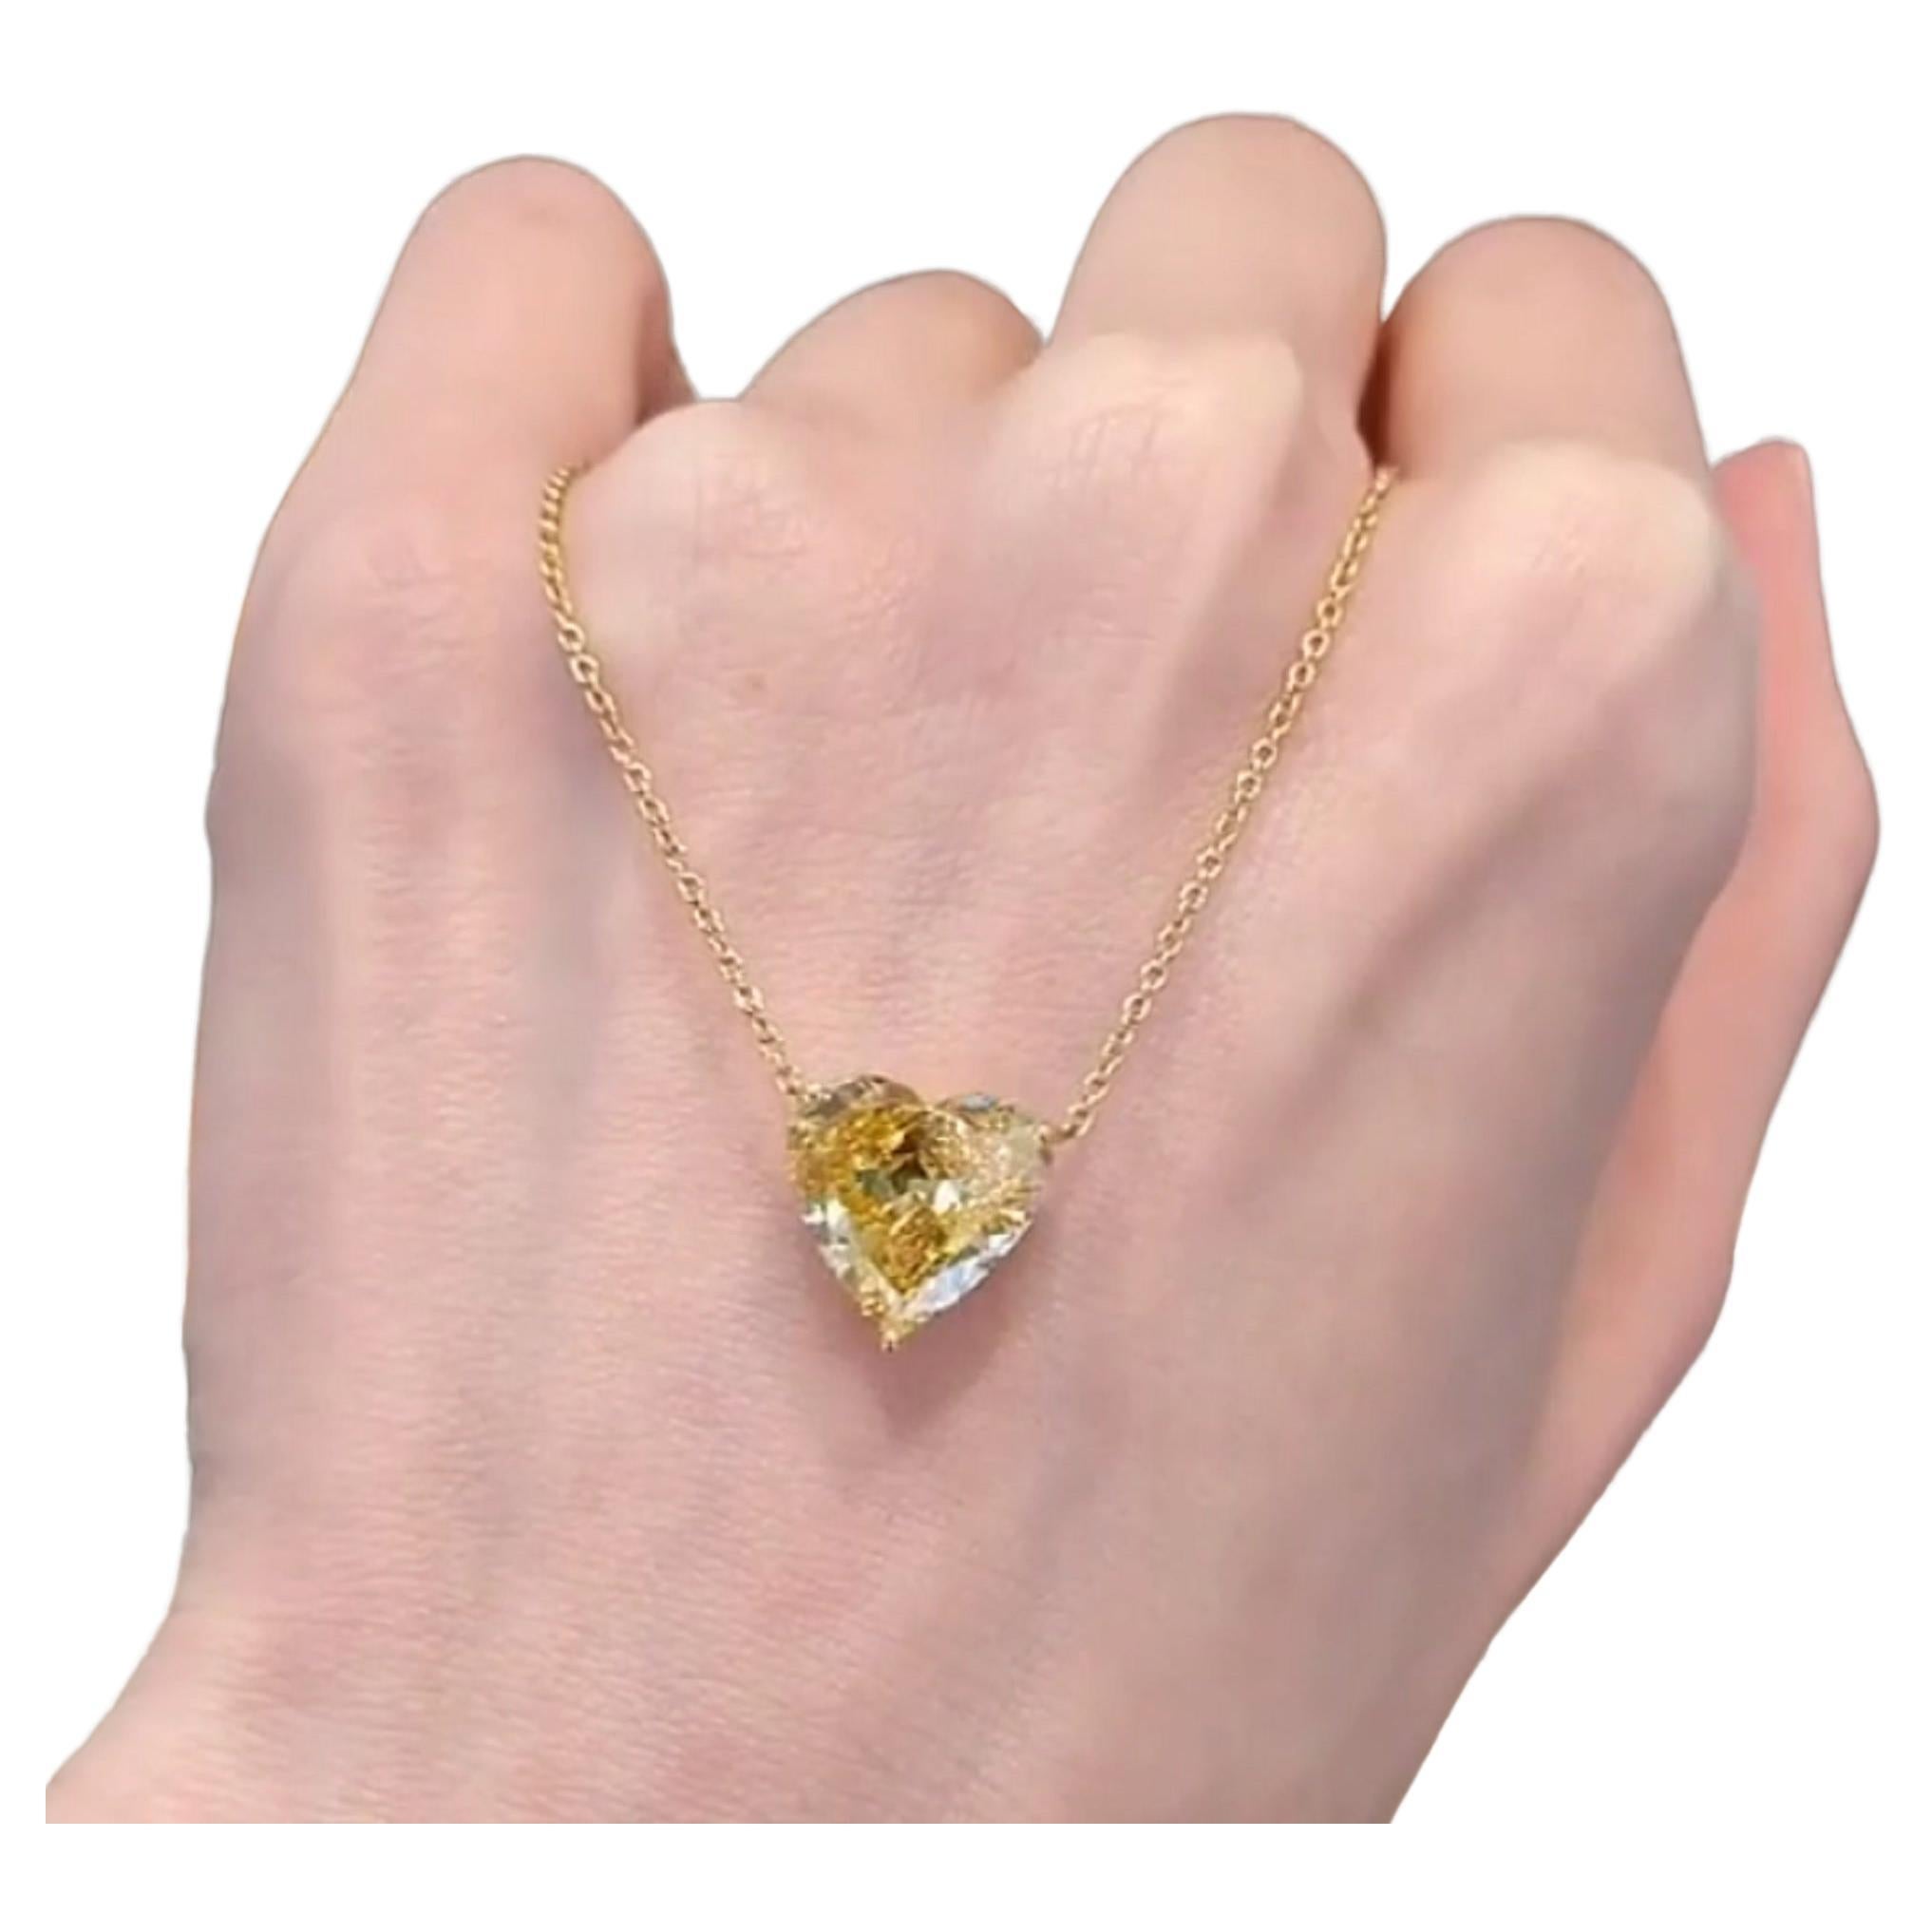 GIA-zertifizierter 3,13 Karat Fancy intensiv gelber herzförmiger Diamant-Anhänger in Herzform aus Gold